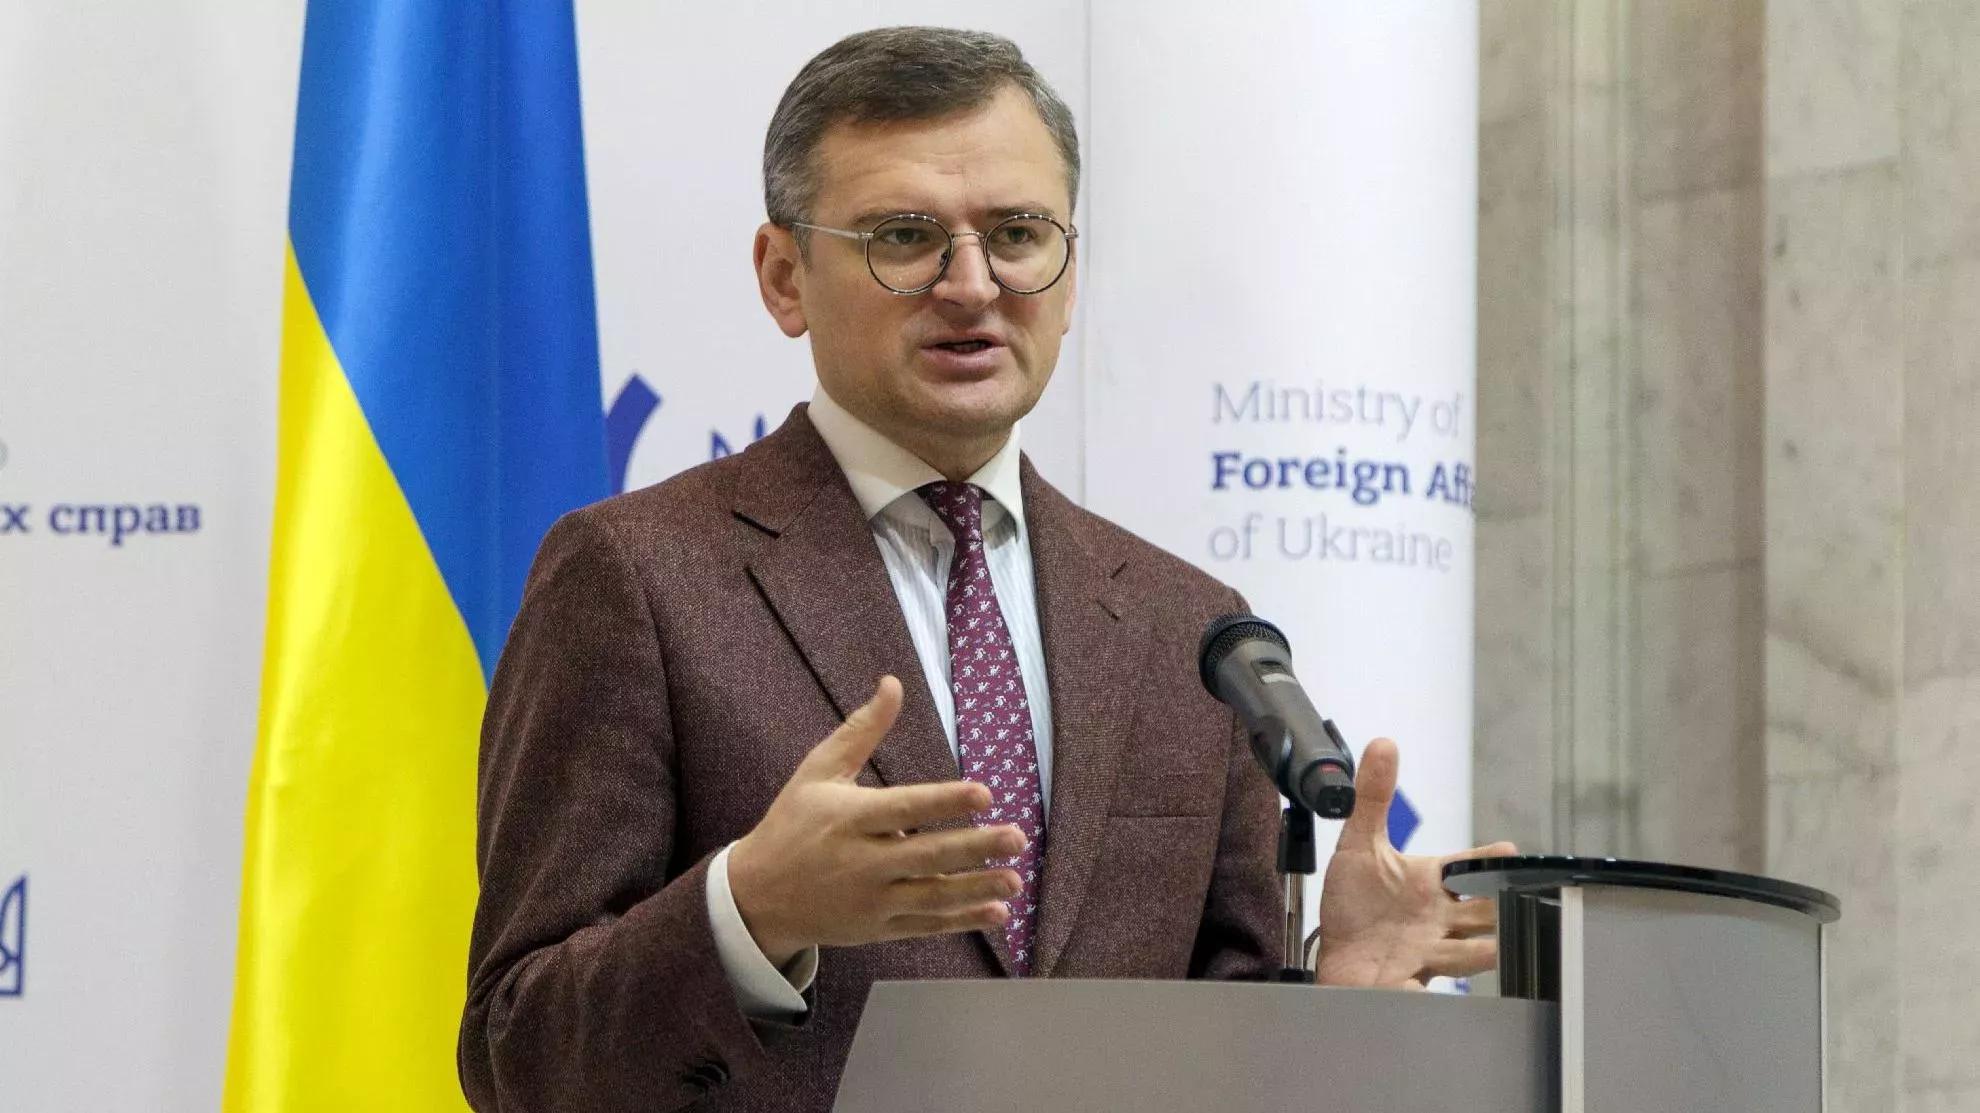 Problemy ukraińskie w Brukseli, zmiany rządowe w Polsce i inne ważne wiadomości dnia